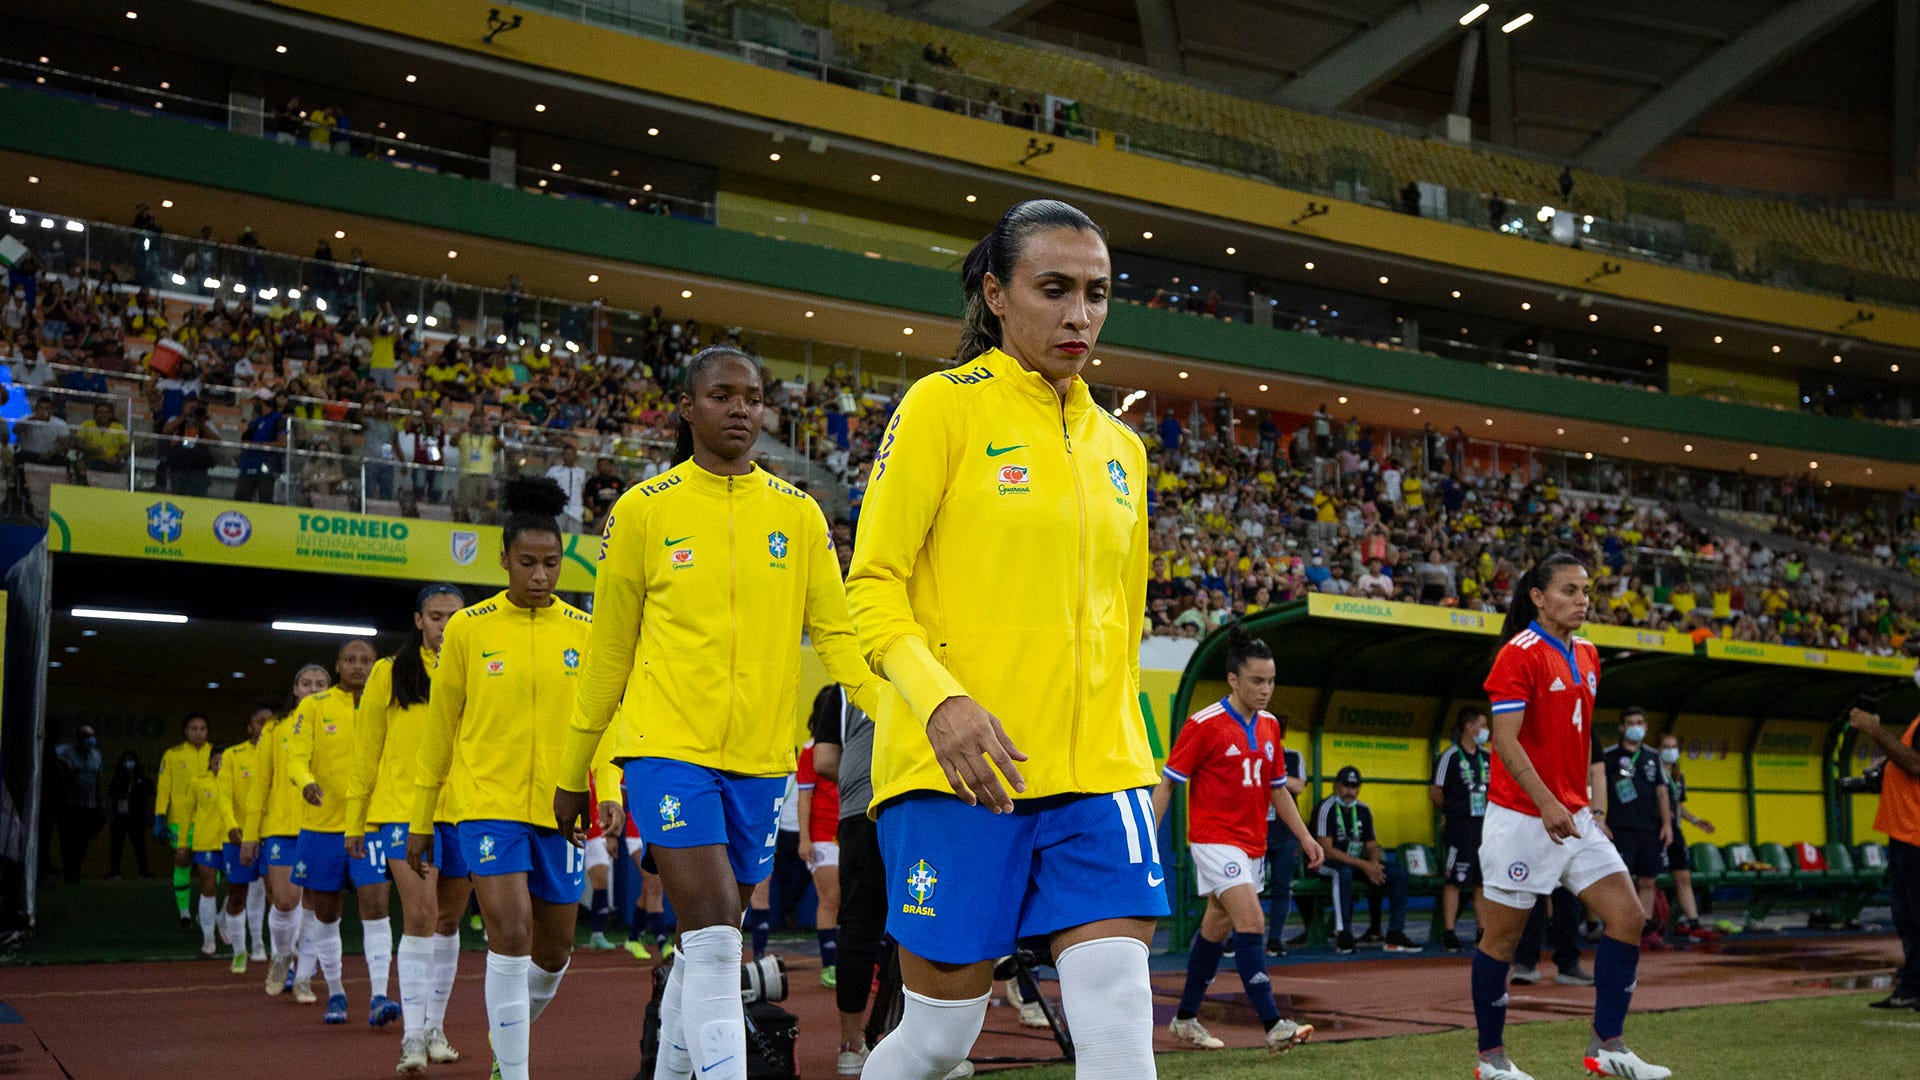 Brasil e Holanda empatam em jogo cheio de gols no futebol feminino -  Esportes - R7 Olimpíadas, jogo futebol feminino hoje 